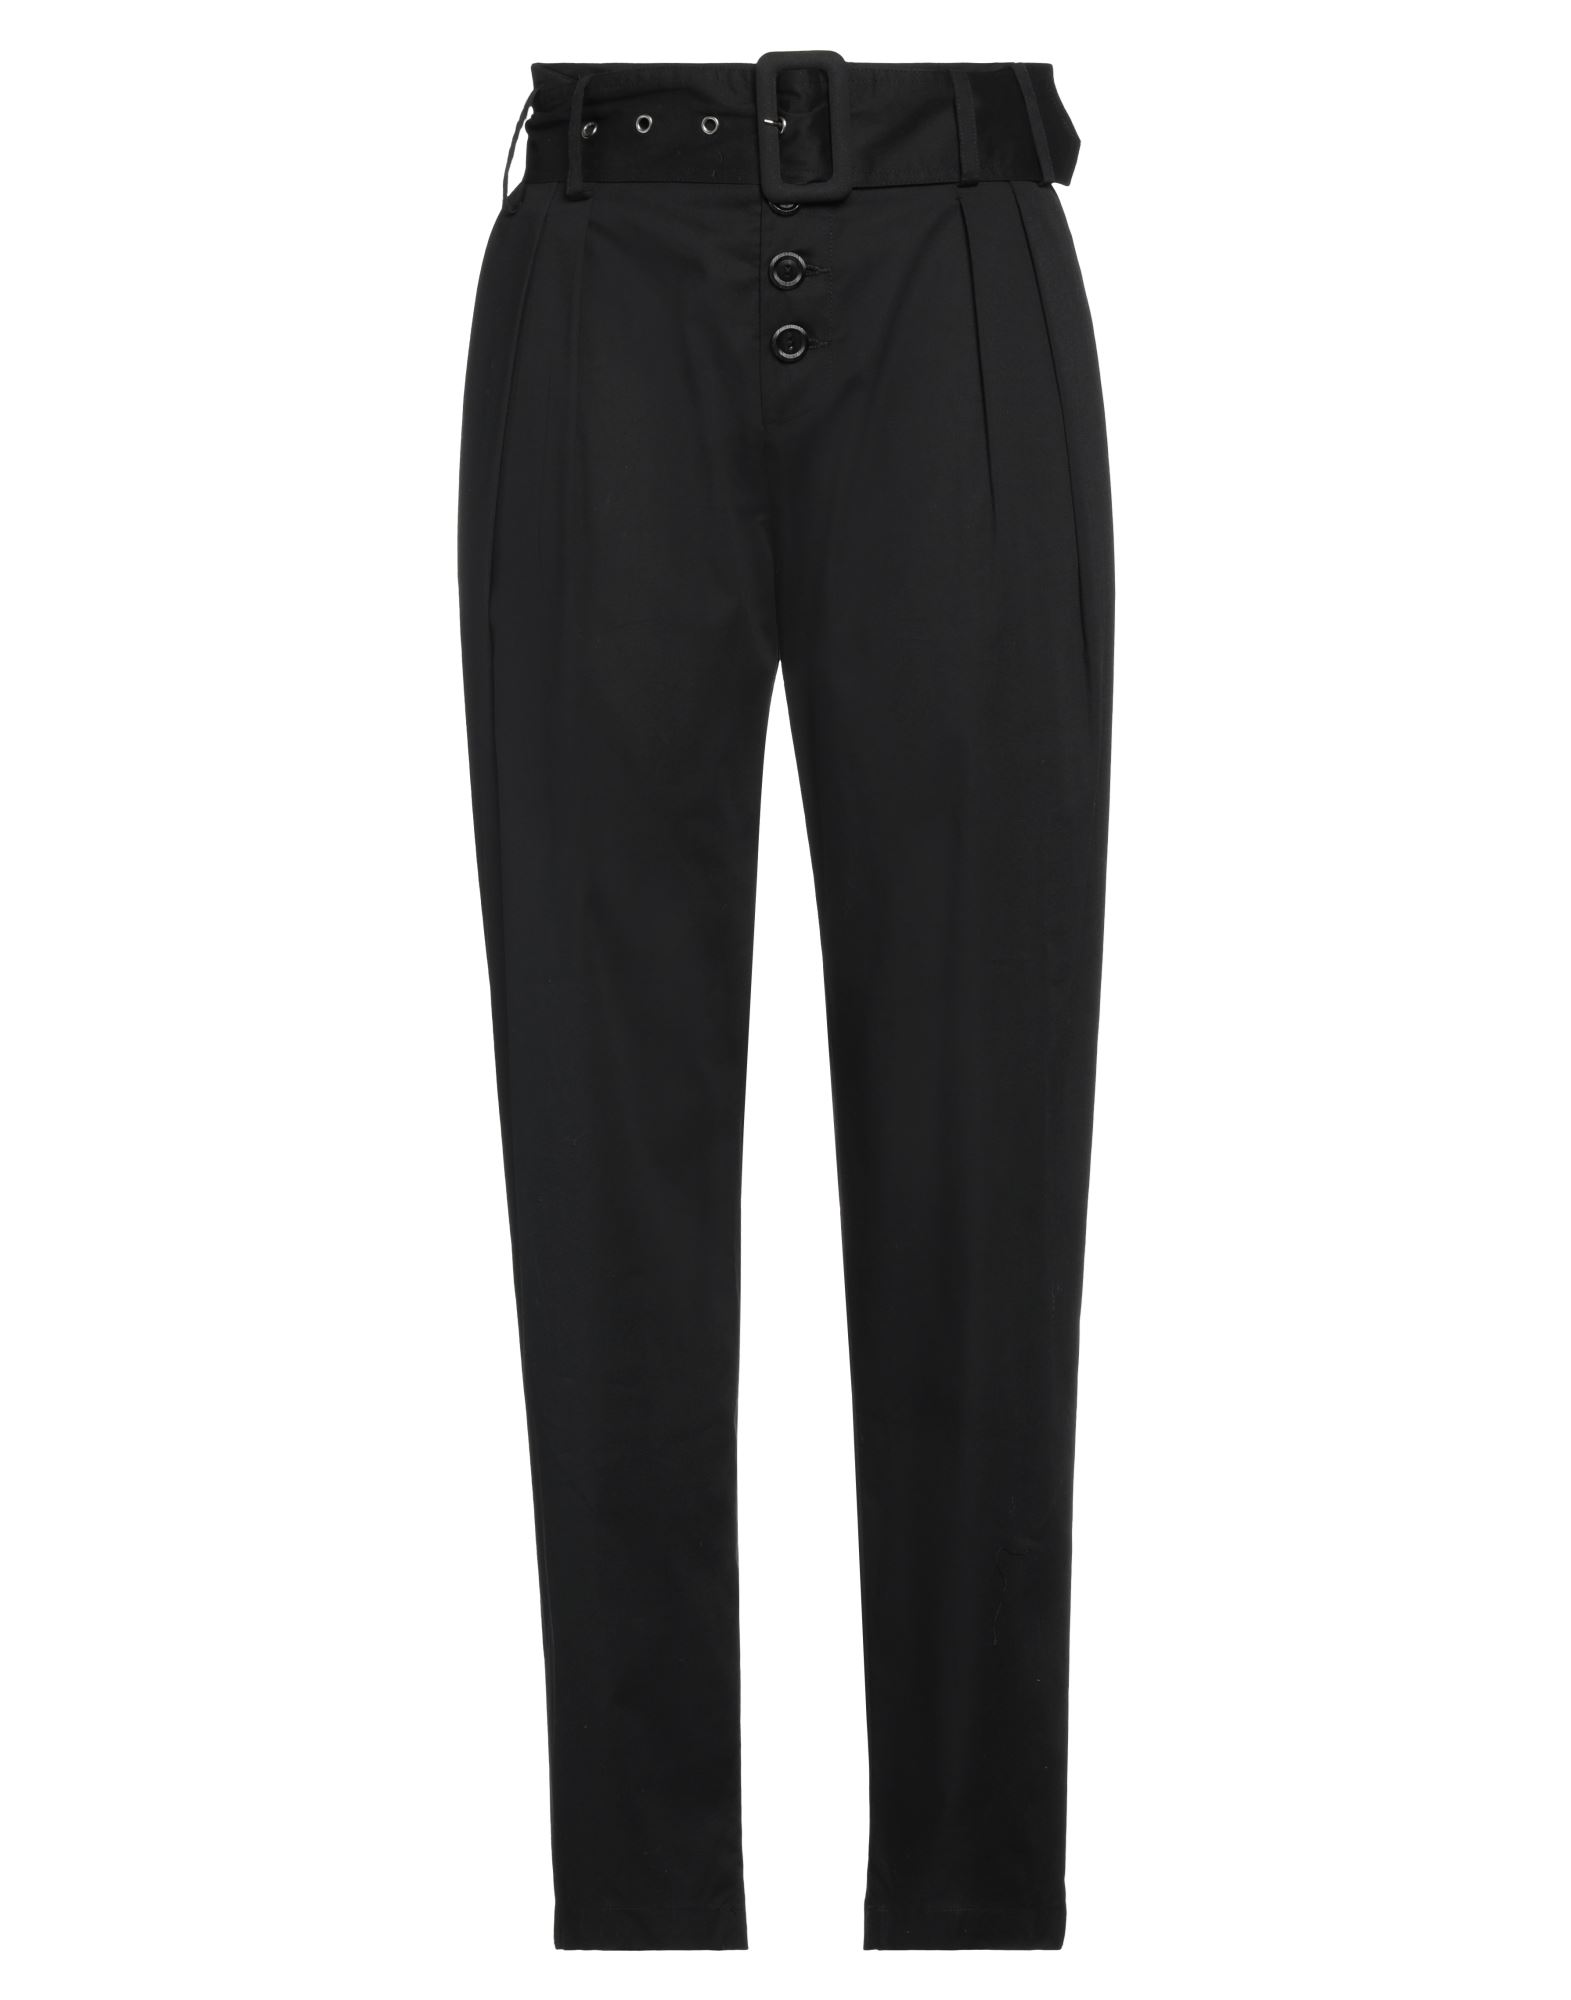 Brand Unique Pants In Black